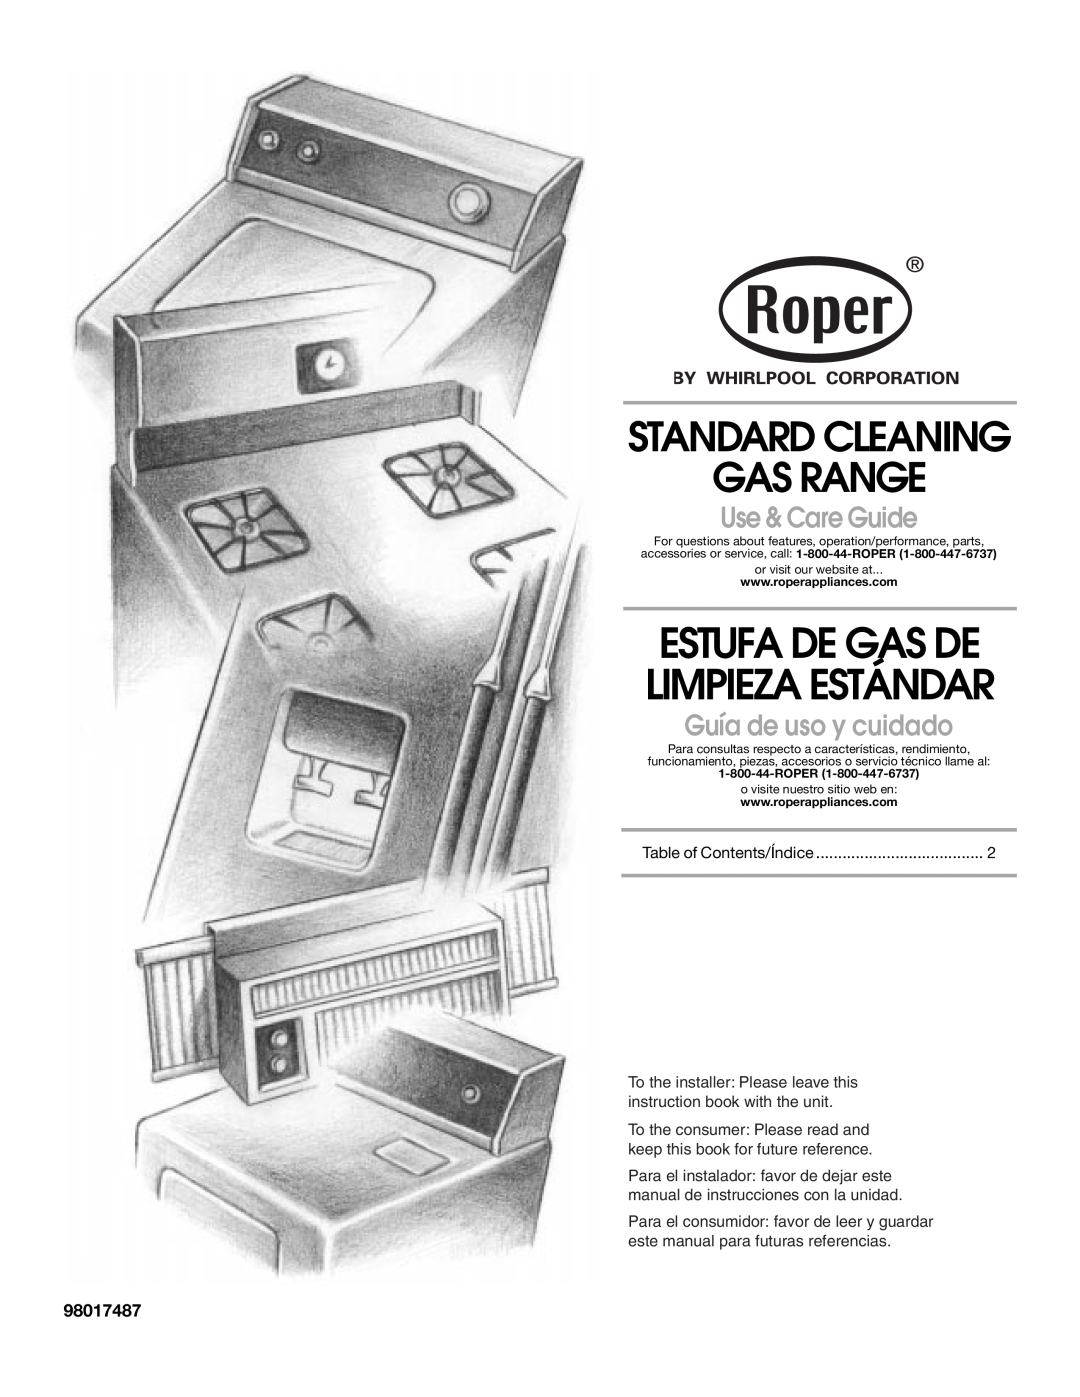 Whirlpool STANDARD CLEANING GAS RANGE manual Estufa De Gas De Limpieza Estándar, Use & Care Guide, Guía de uso y cuidado 